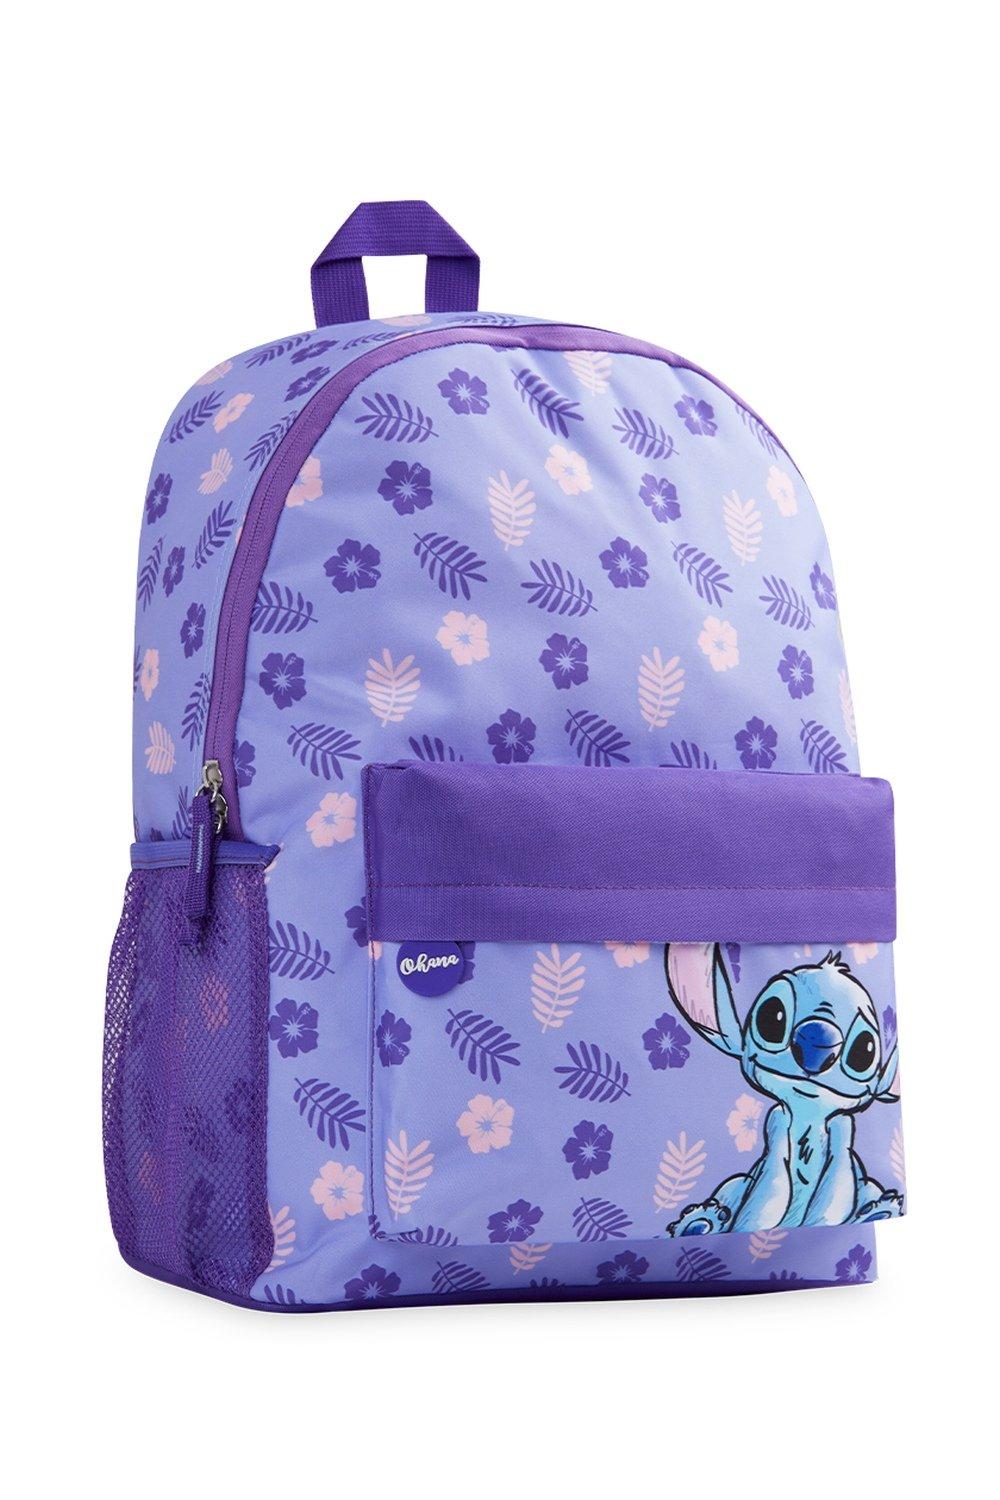 Школьная сумка Лило и Стич Disney, фиолетовый disney lilo